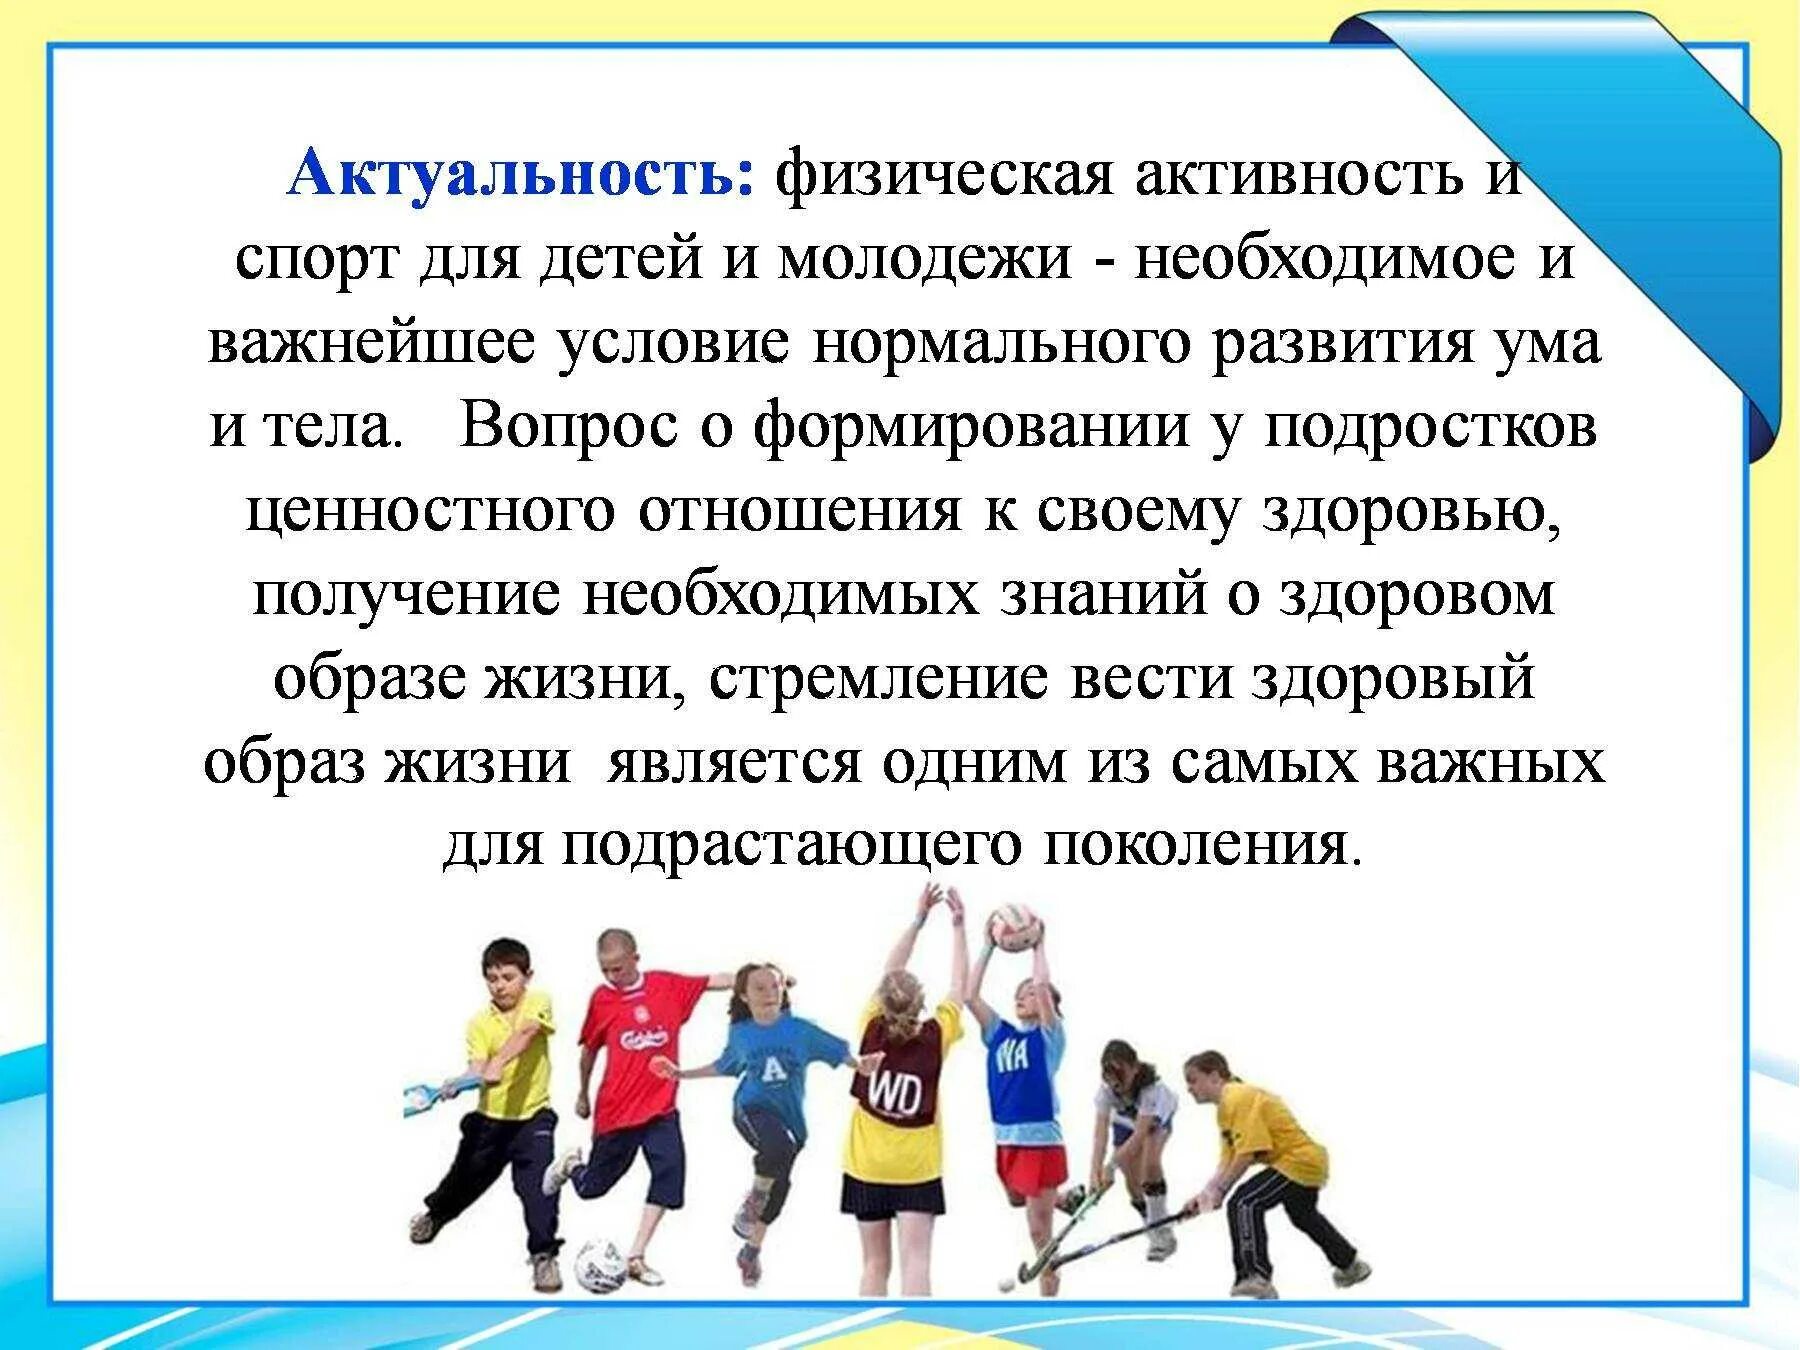 Проекты спорт детям. Актуальность занятия спортом. Физическая активность школьников. Влияние физической активности на организм. Двигательная активность школьников.